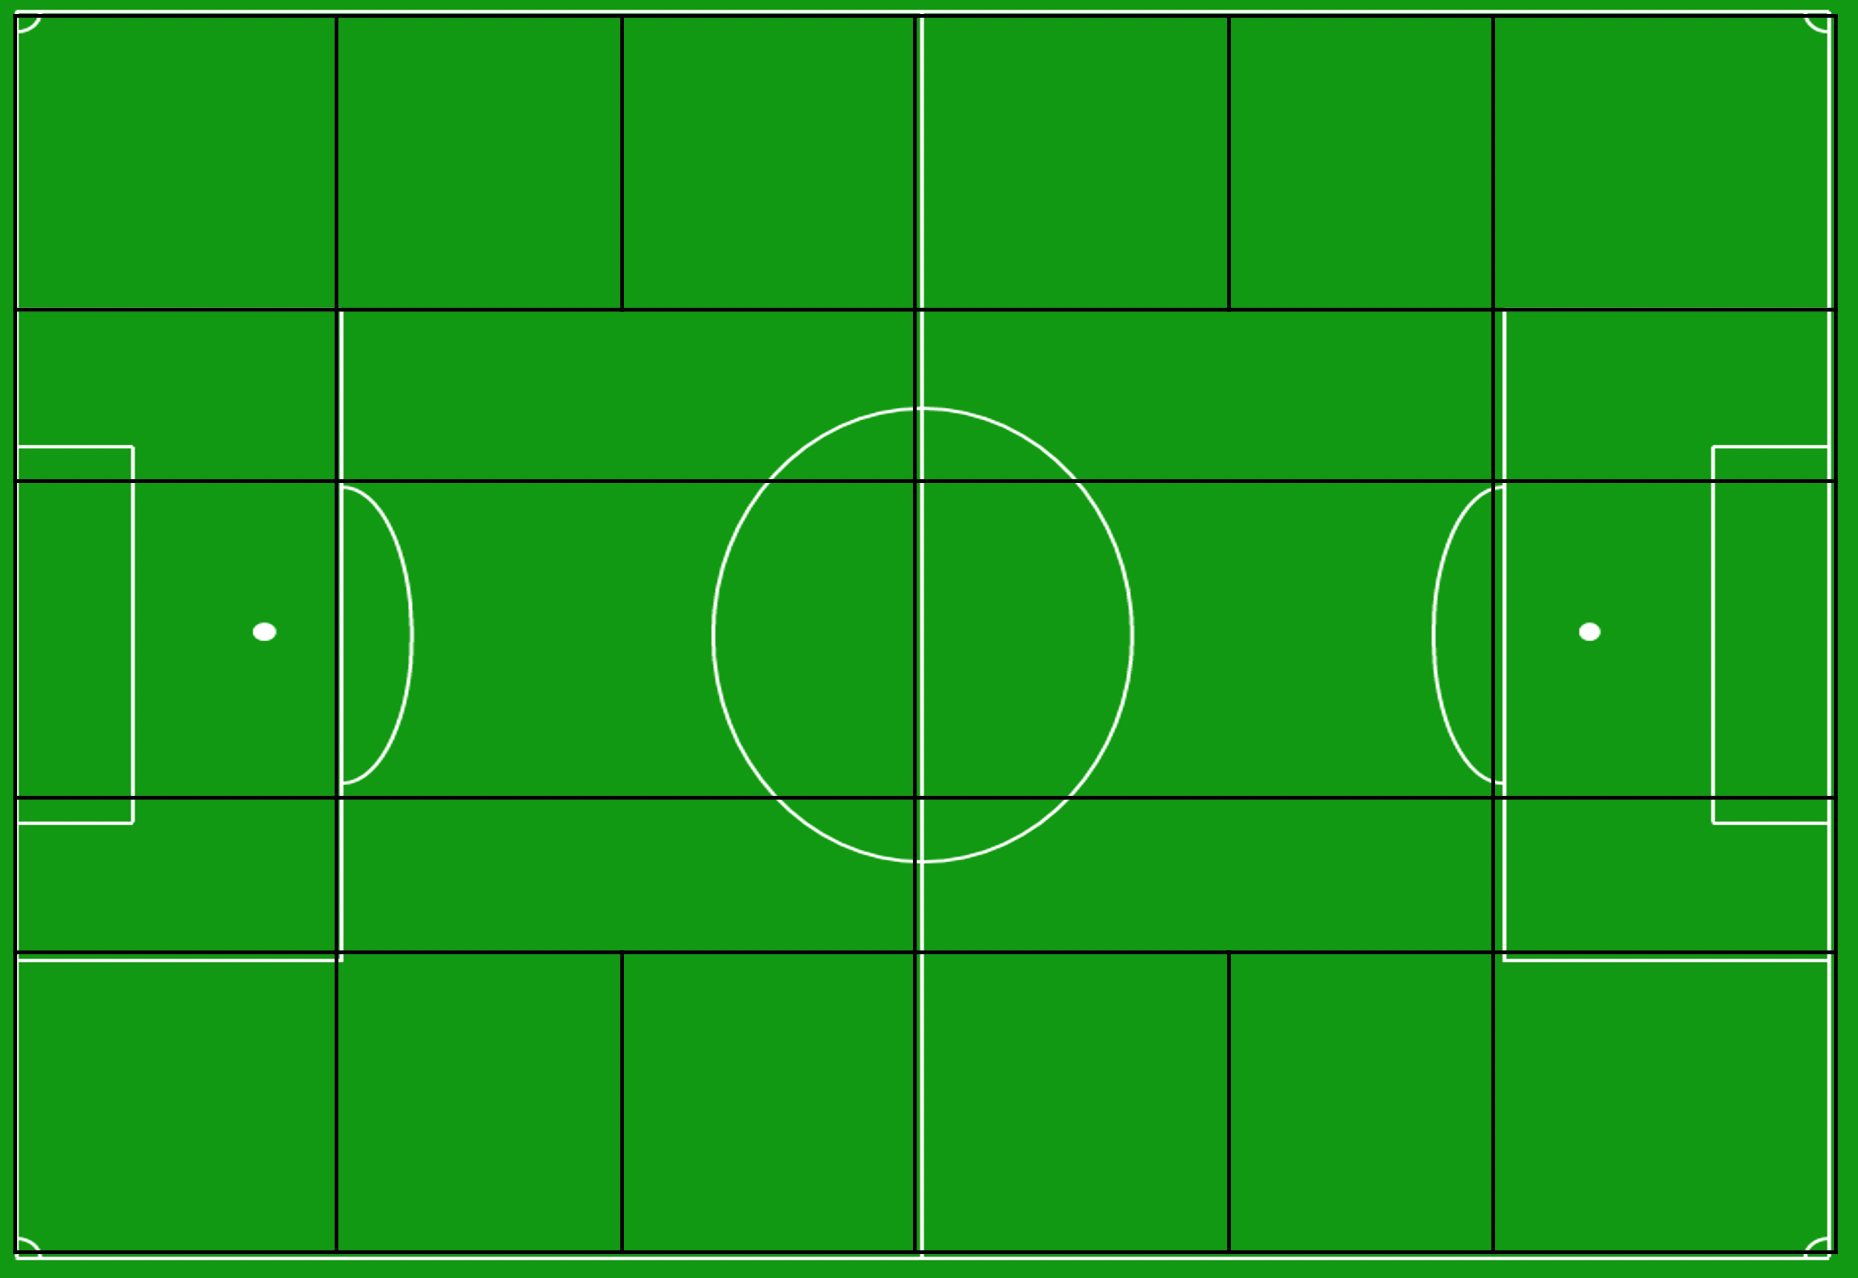 Een voetbalveld onderverdeeld in zones zoals Guardiola en Klopp het zien.